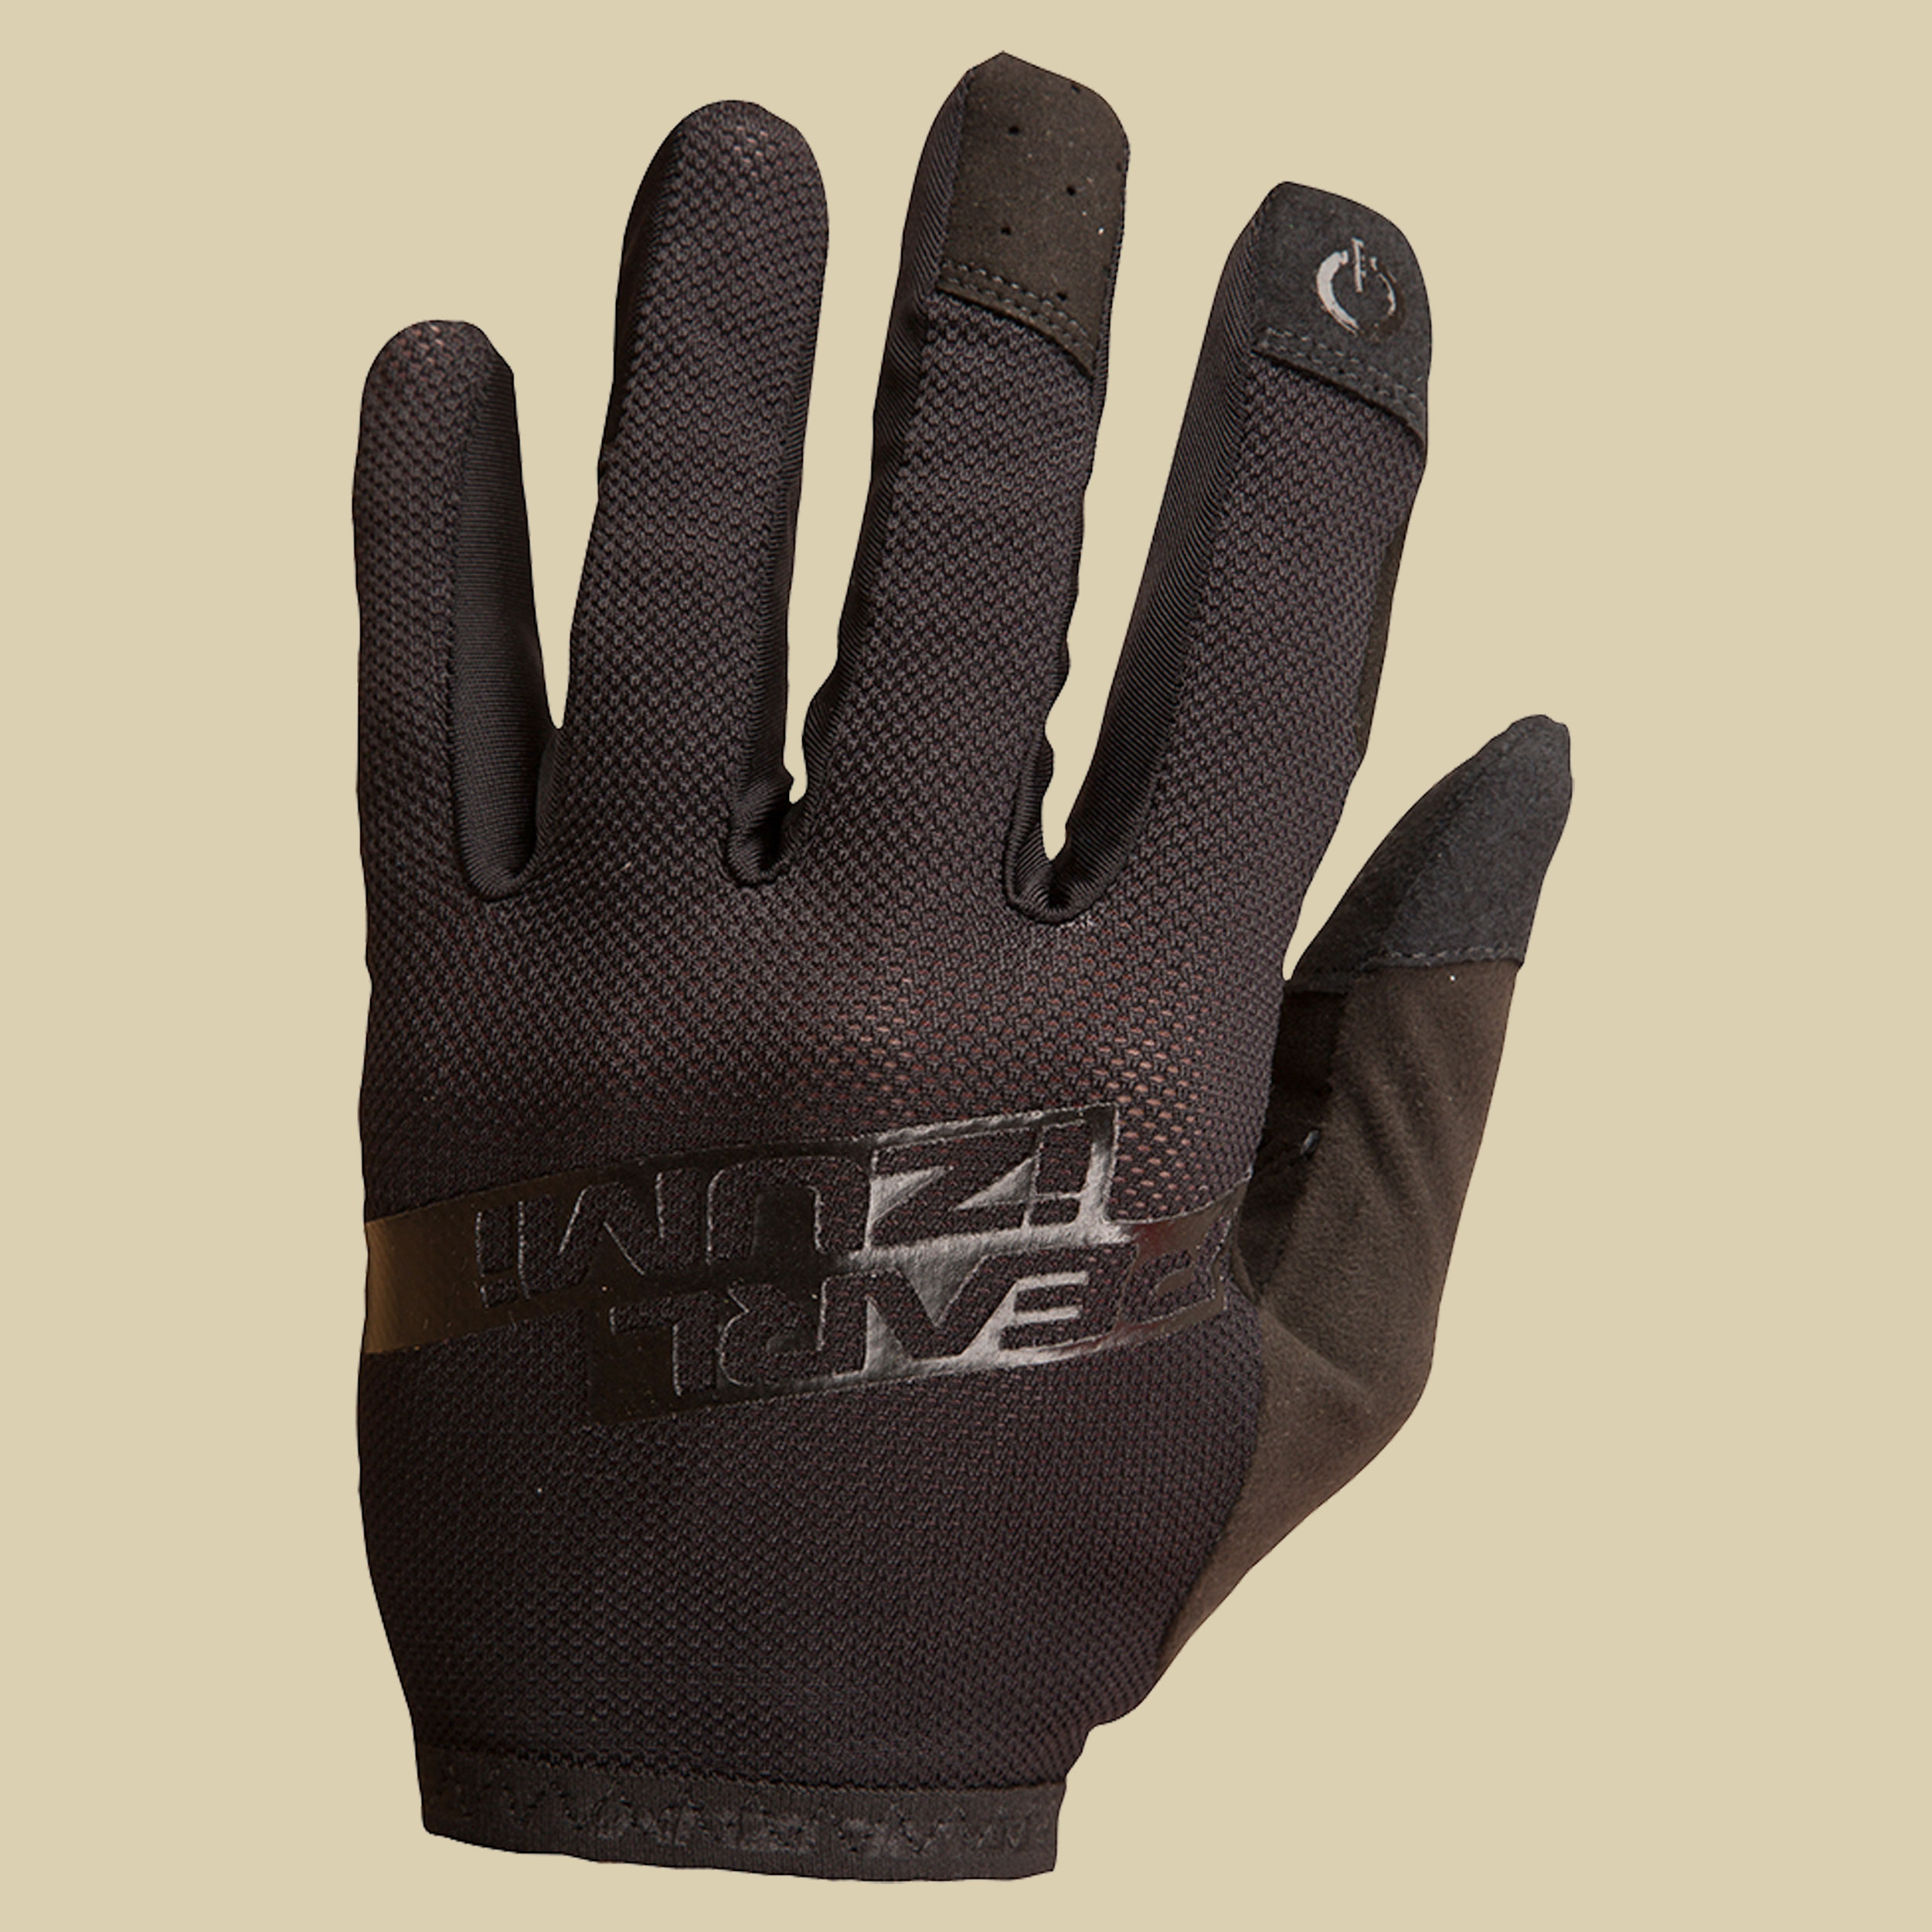 Divide Glove Größe L Farbe black/black